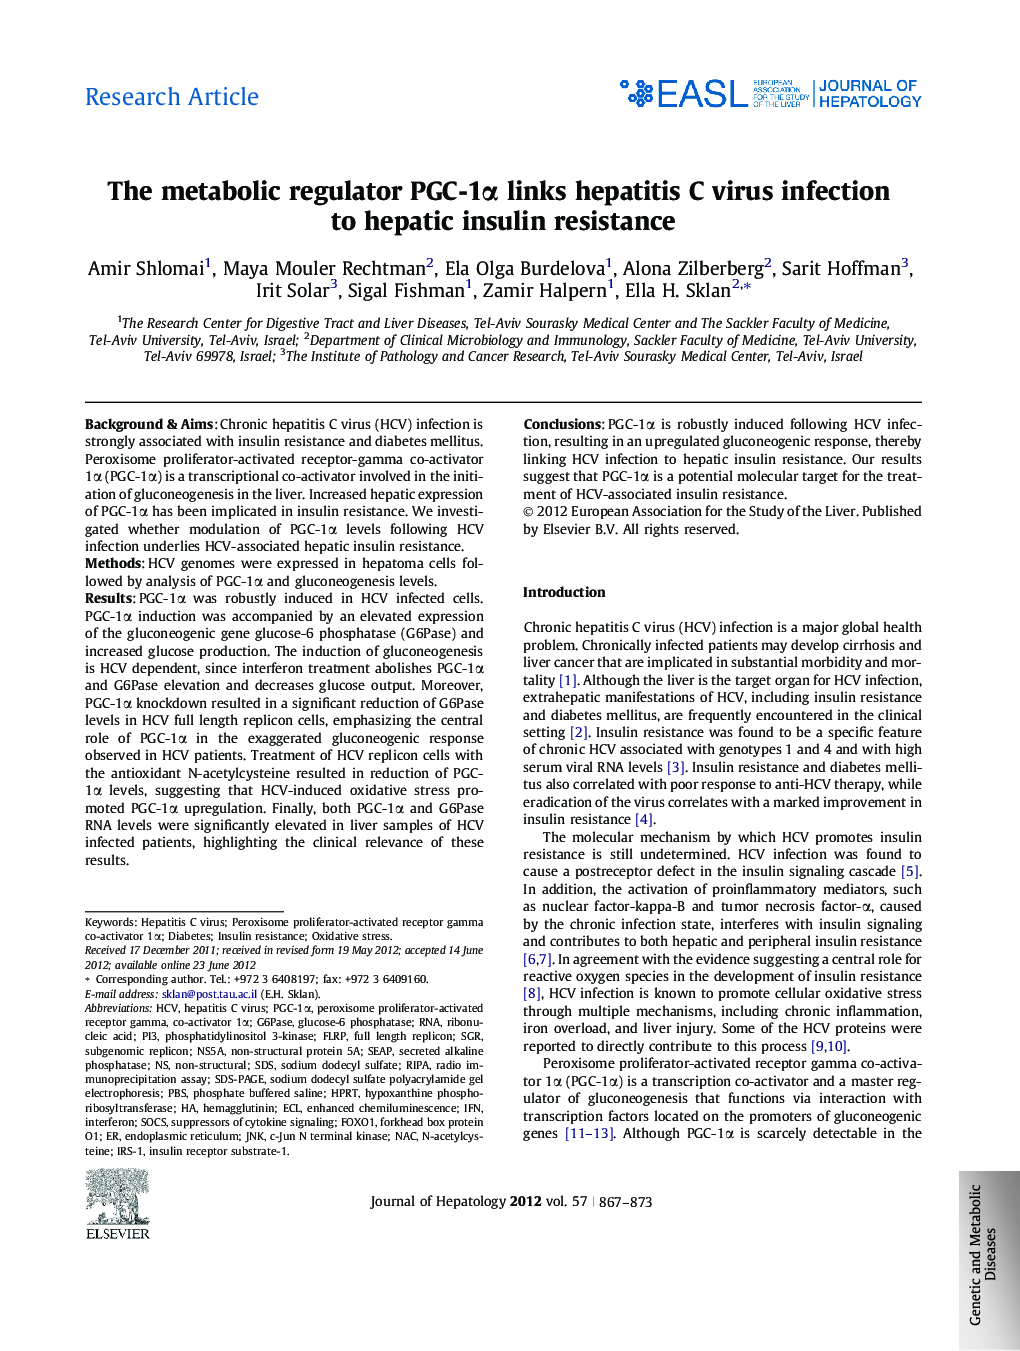 Research ArticleThe metabolic regulator PGC-1Î± links hepatitis C virus infection to hepatic insulin resistance